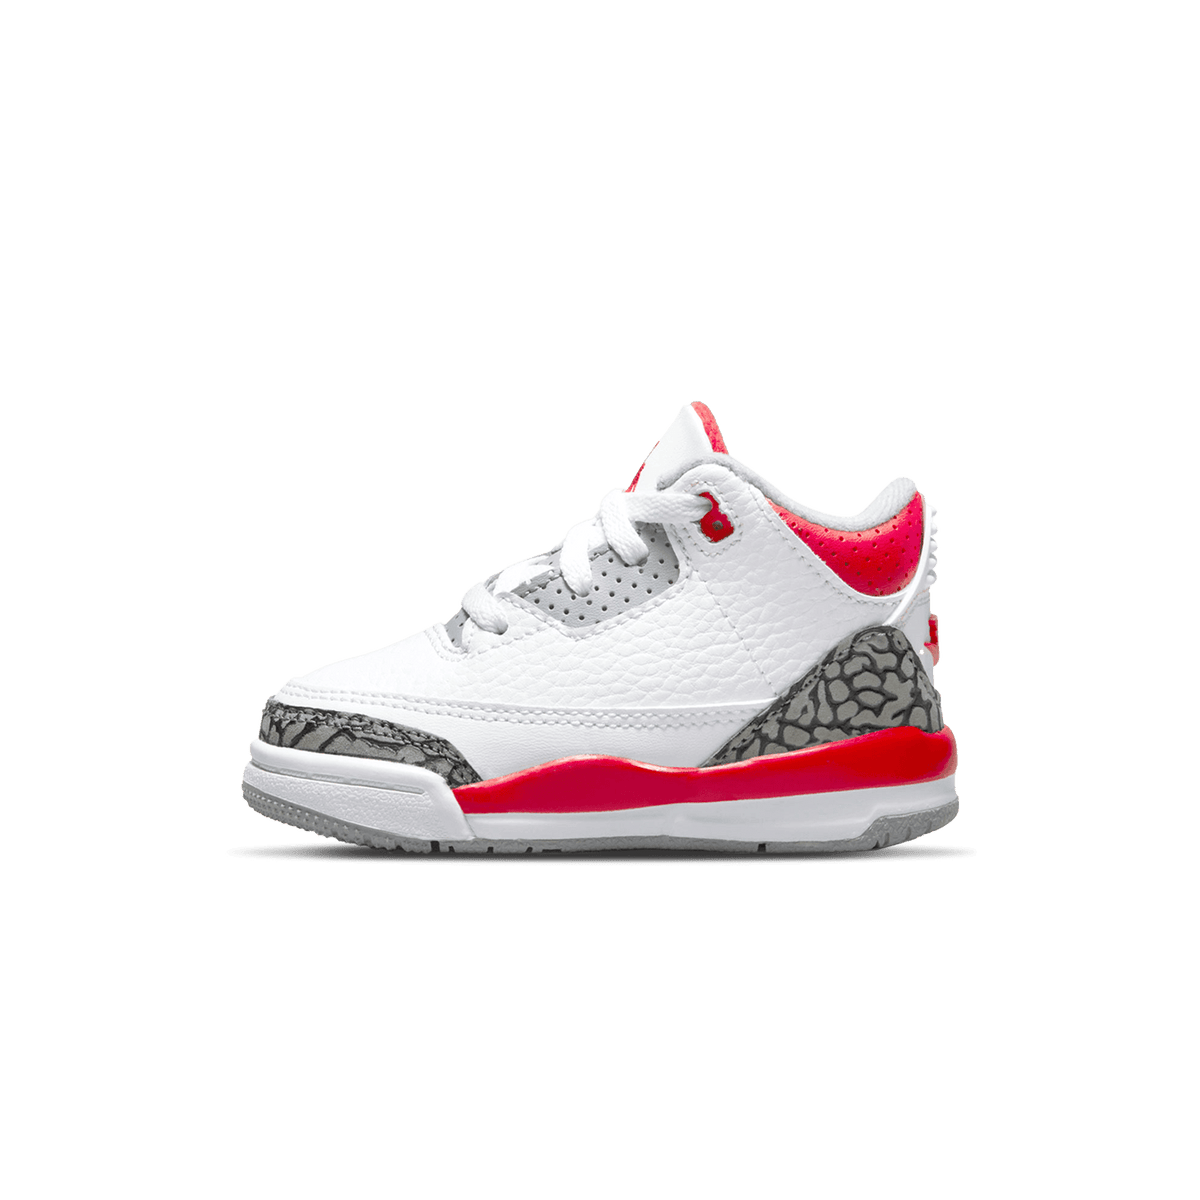 Buy the Air Jordan 4 OG Fire Red 2020 Right Here •